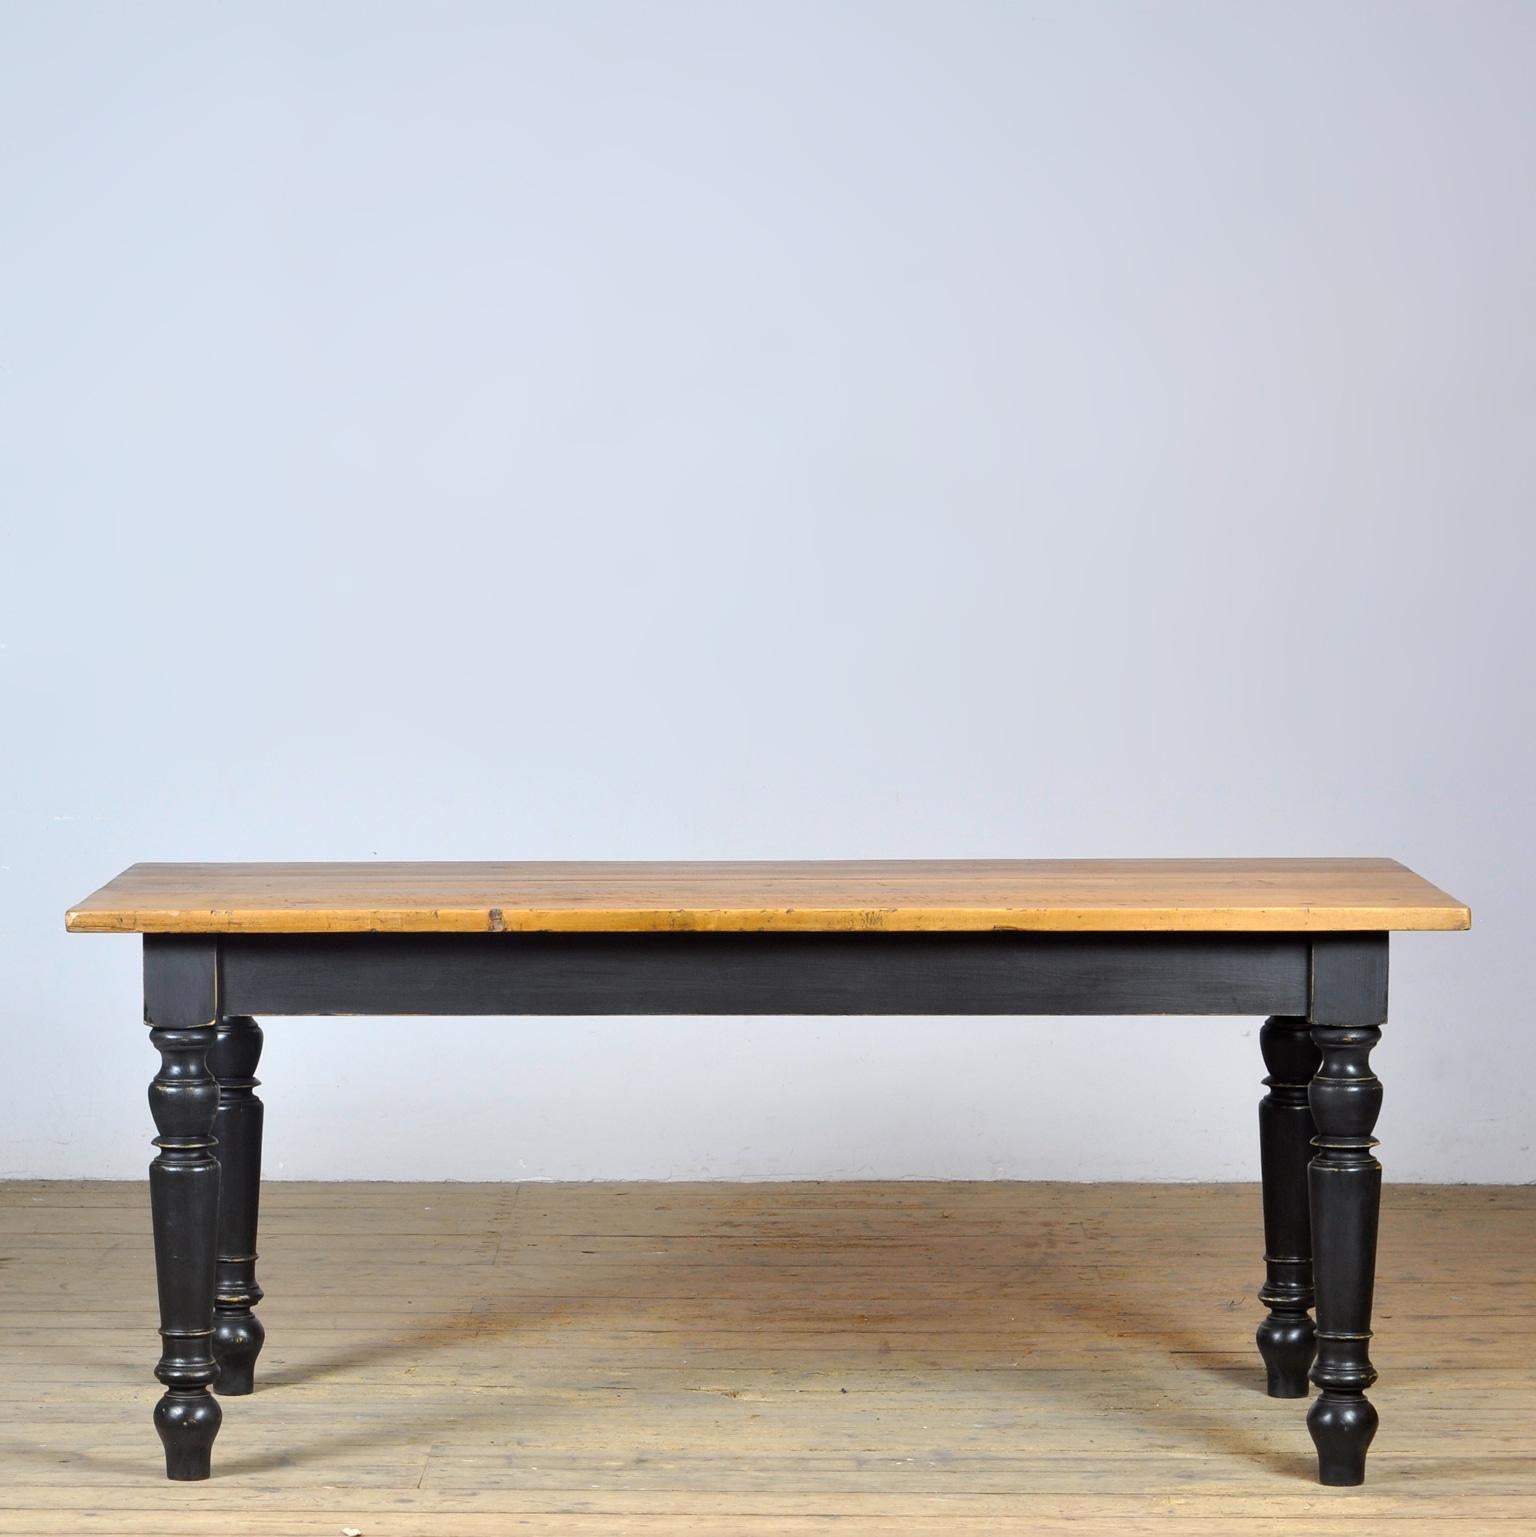 La table de la ferme avec un beau dessus en relief. Le plateau a été fabriqué vers 1920. Les jambes sont neuves. La table peut accueillir 8 personnes.